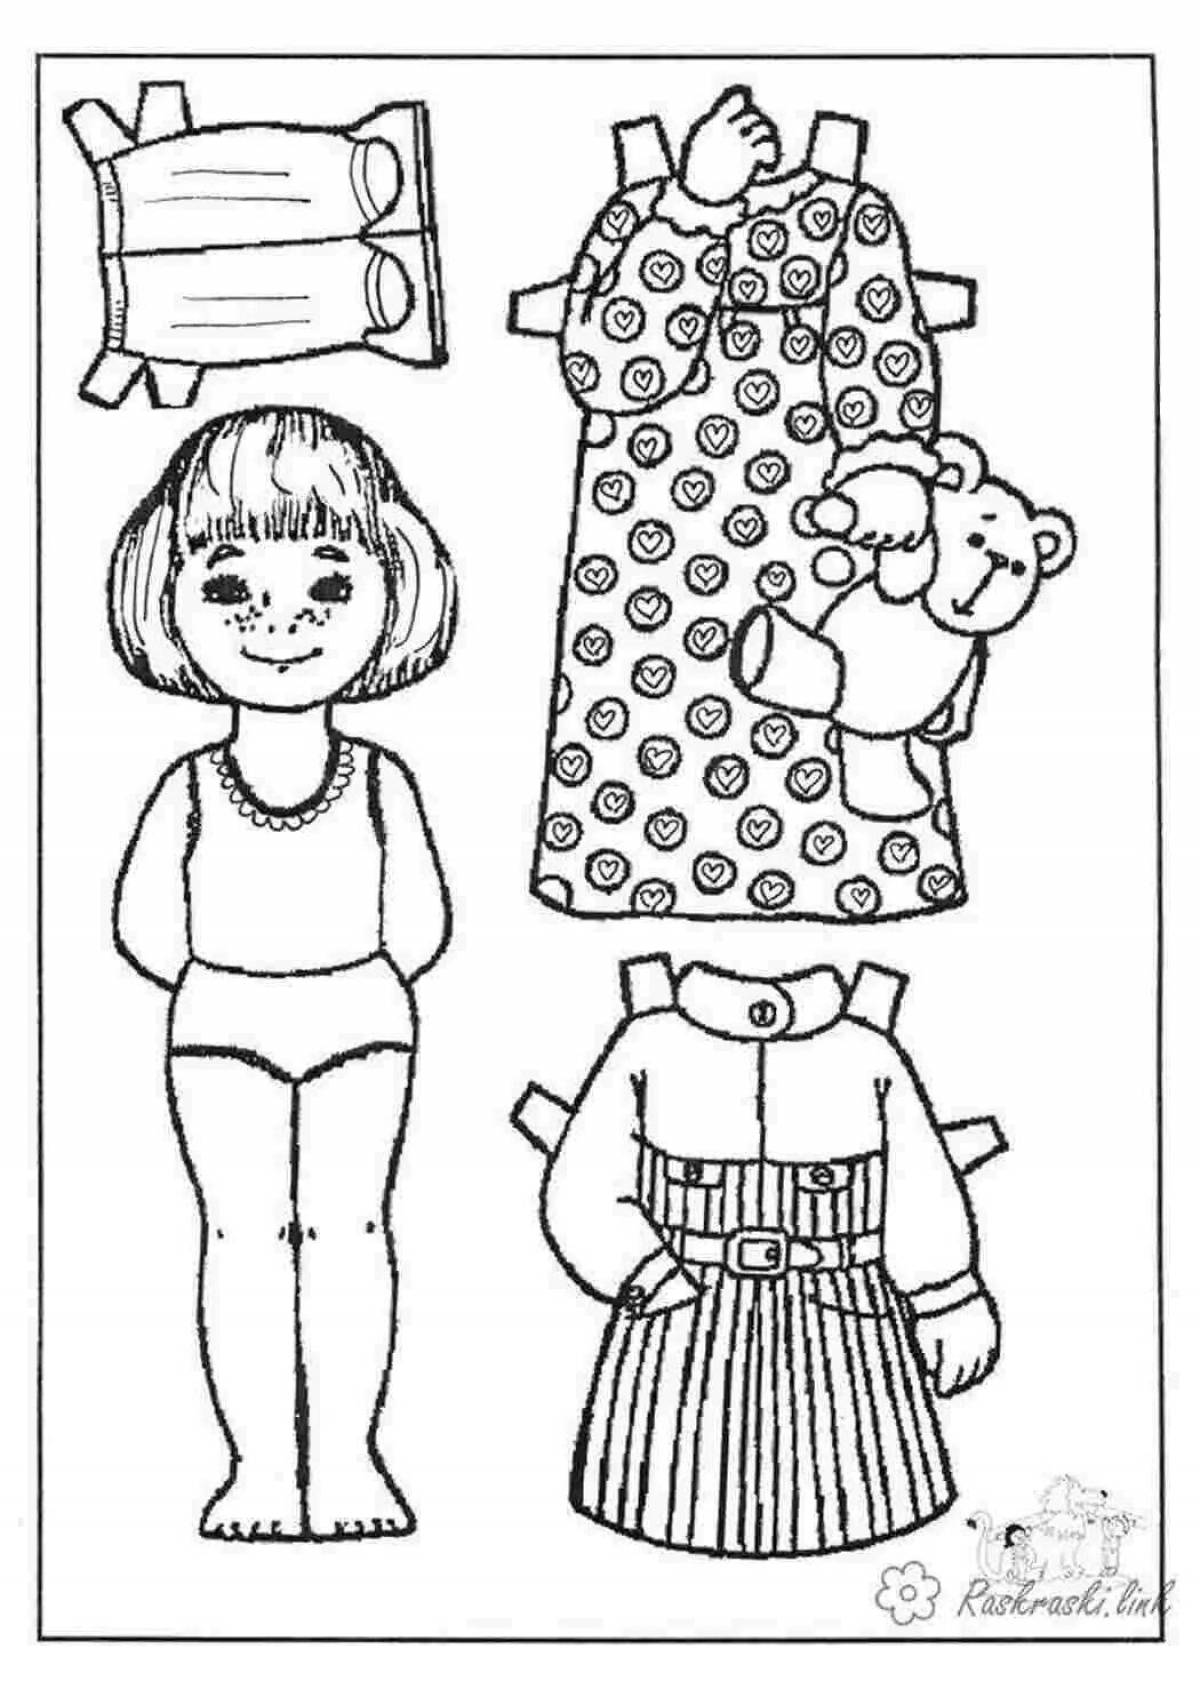 Радостная раскраска куколка в платье